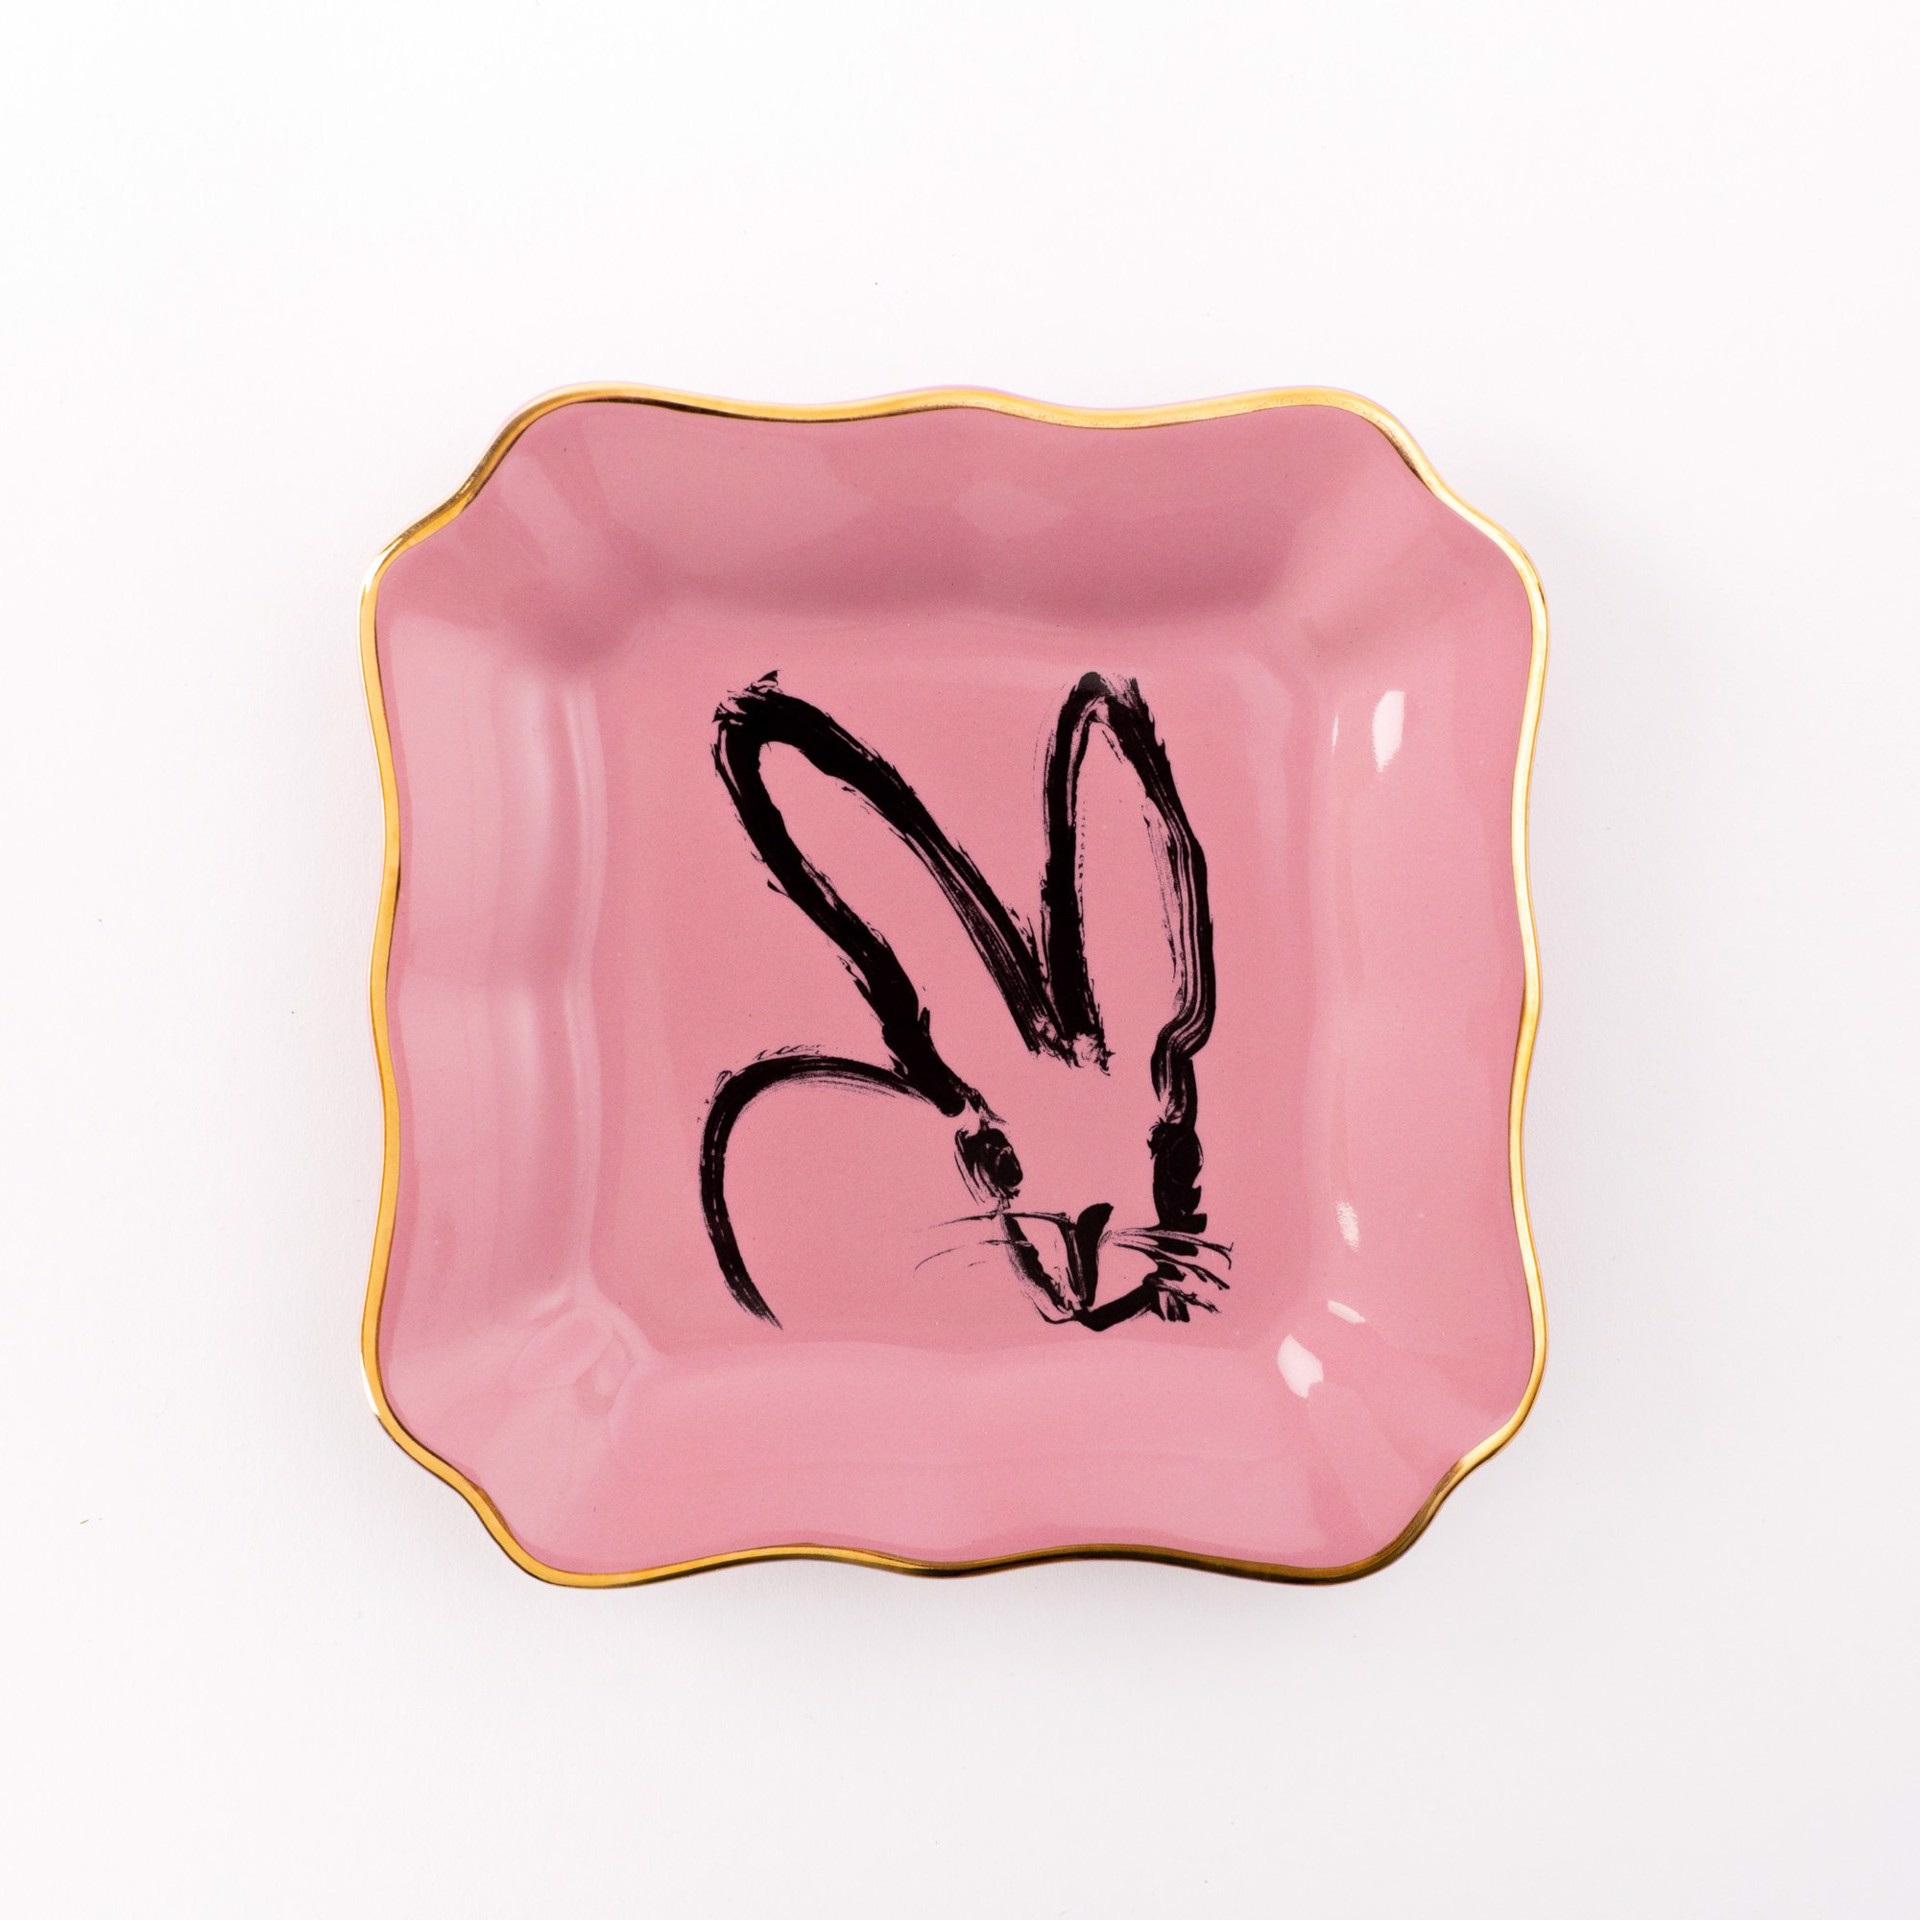 Small Portrait Plate (Pink) by Hunt Slonem (Hop Up Shop)